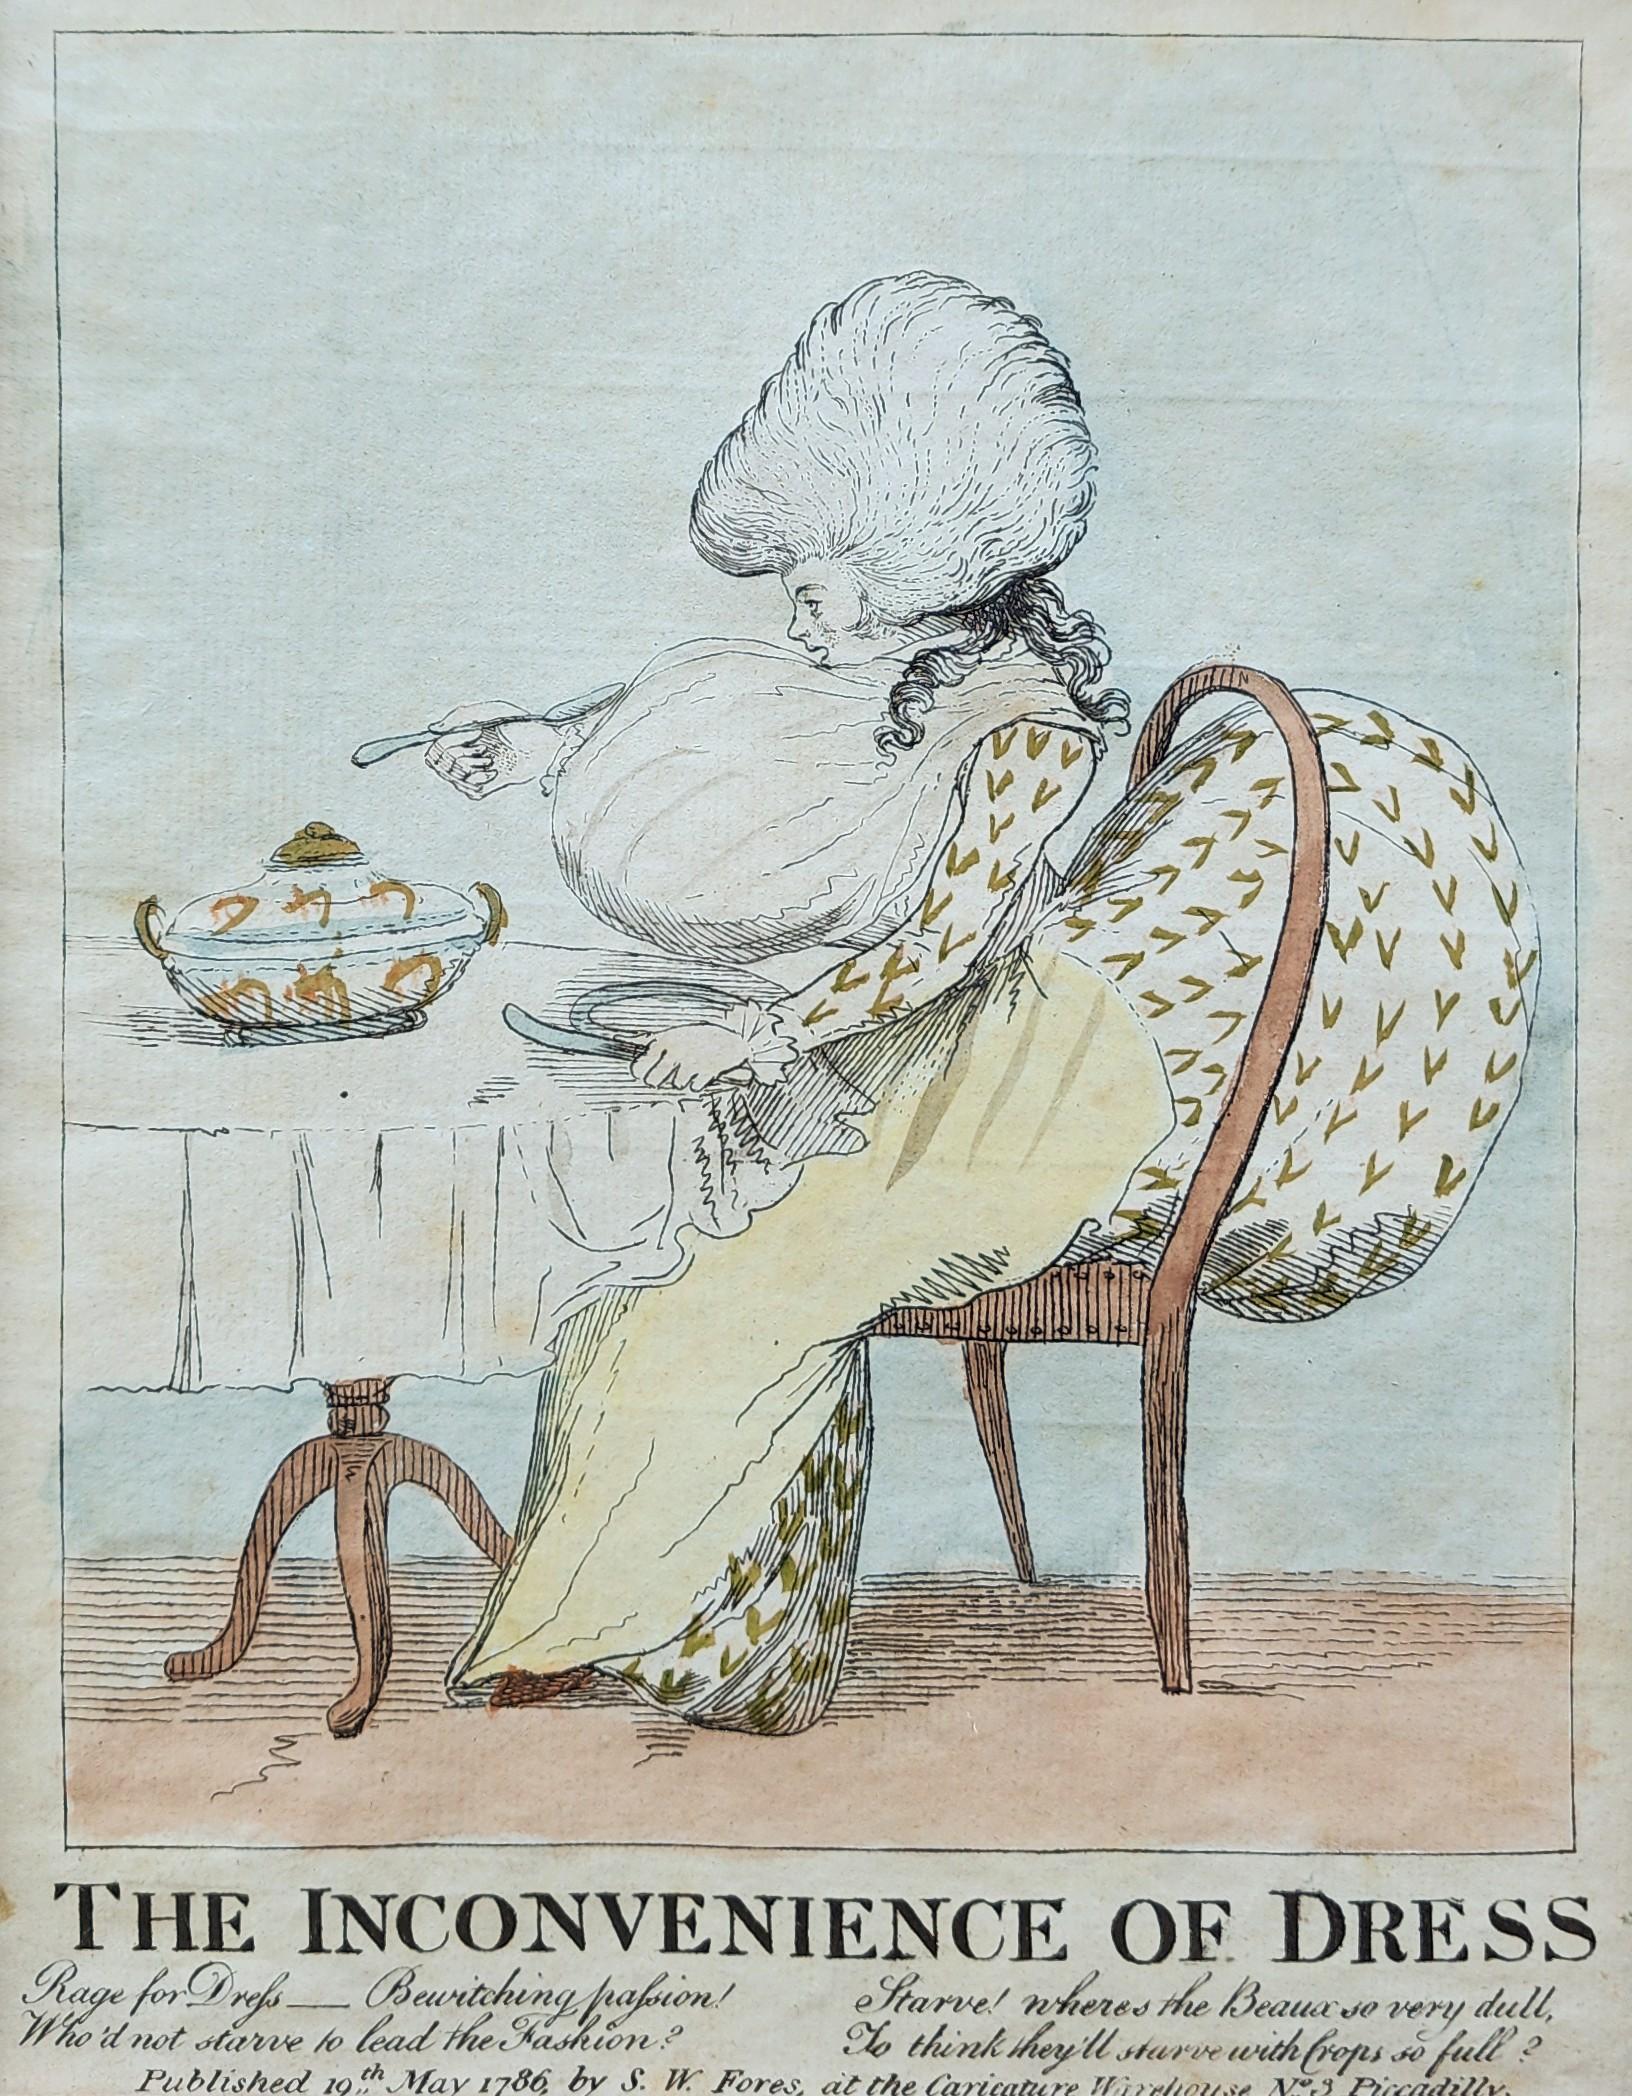 George Townley Stubbs (britannique, 1756-1815)

Publié par : S W Fores

Les inconvénients de la tenue vestimentaire, 1786

Gravure à l'eau-forte et à la main

Taille du site : 9 1/4